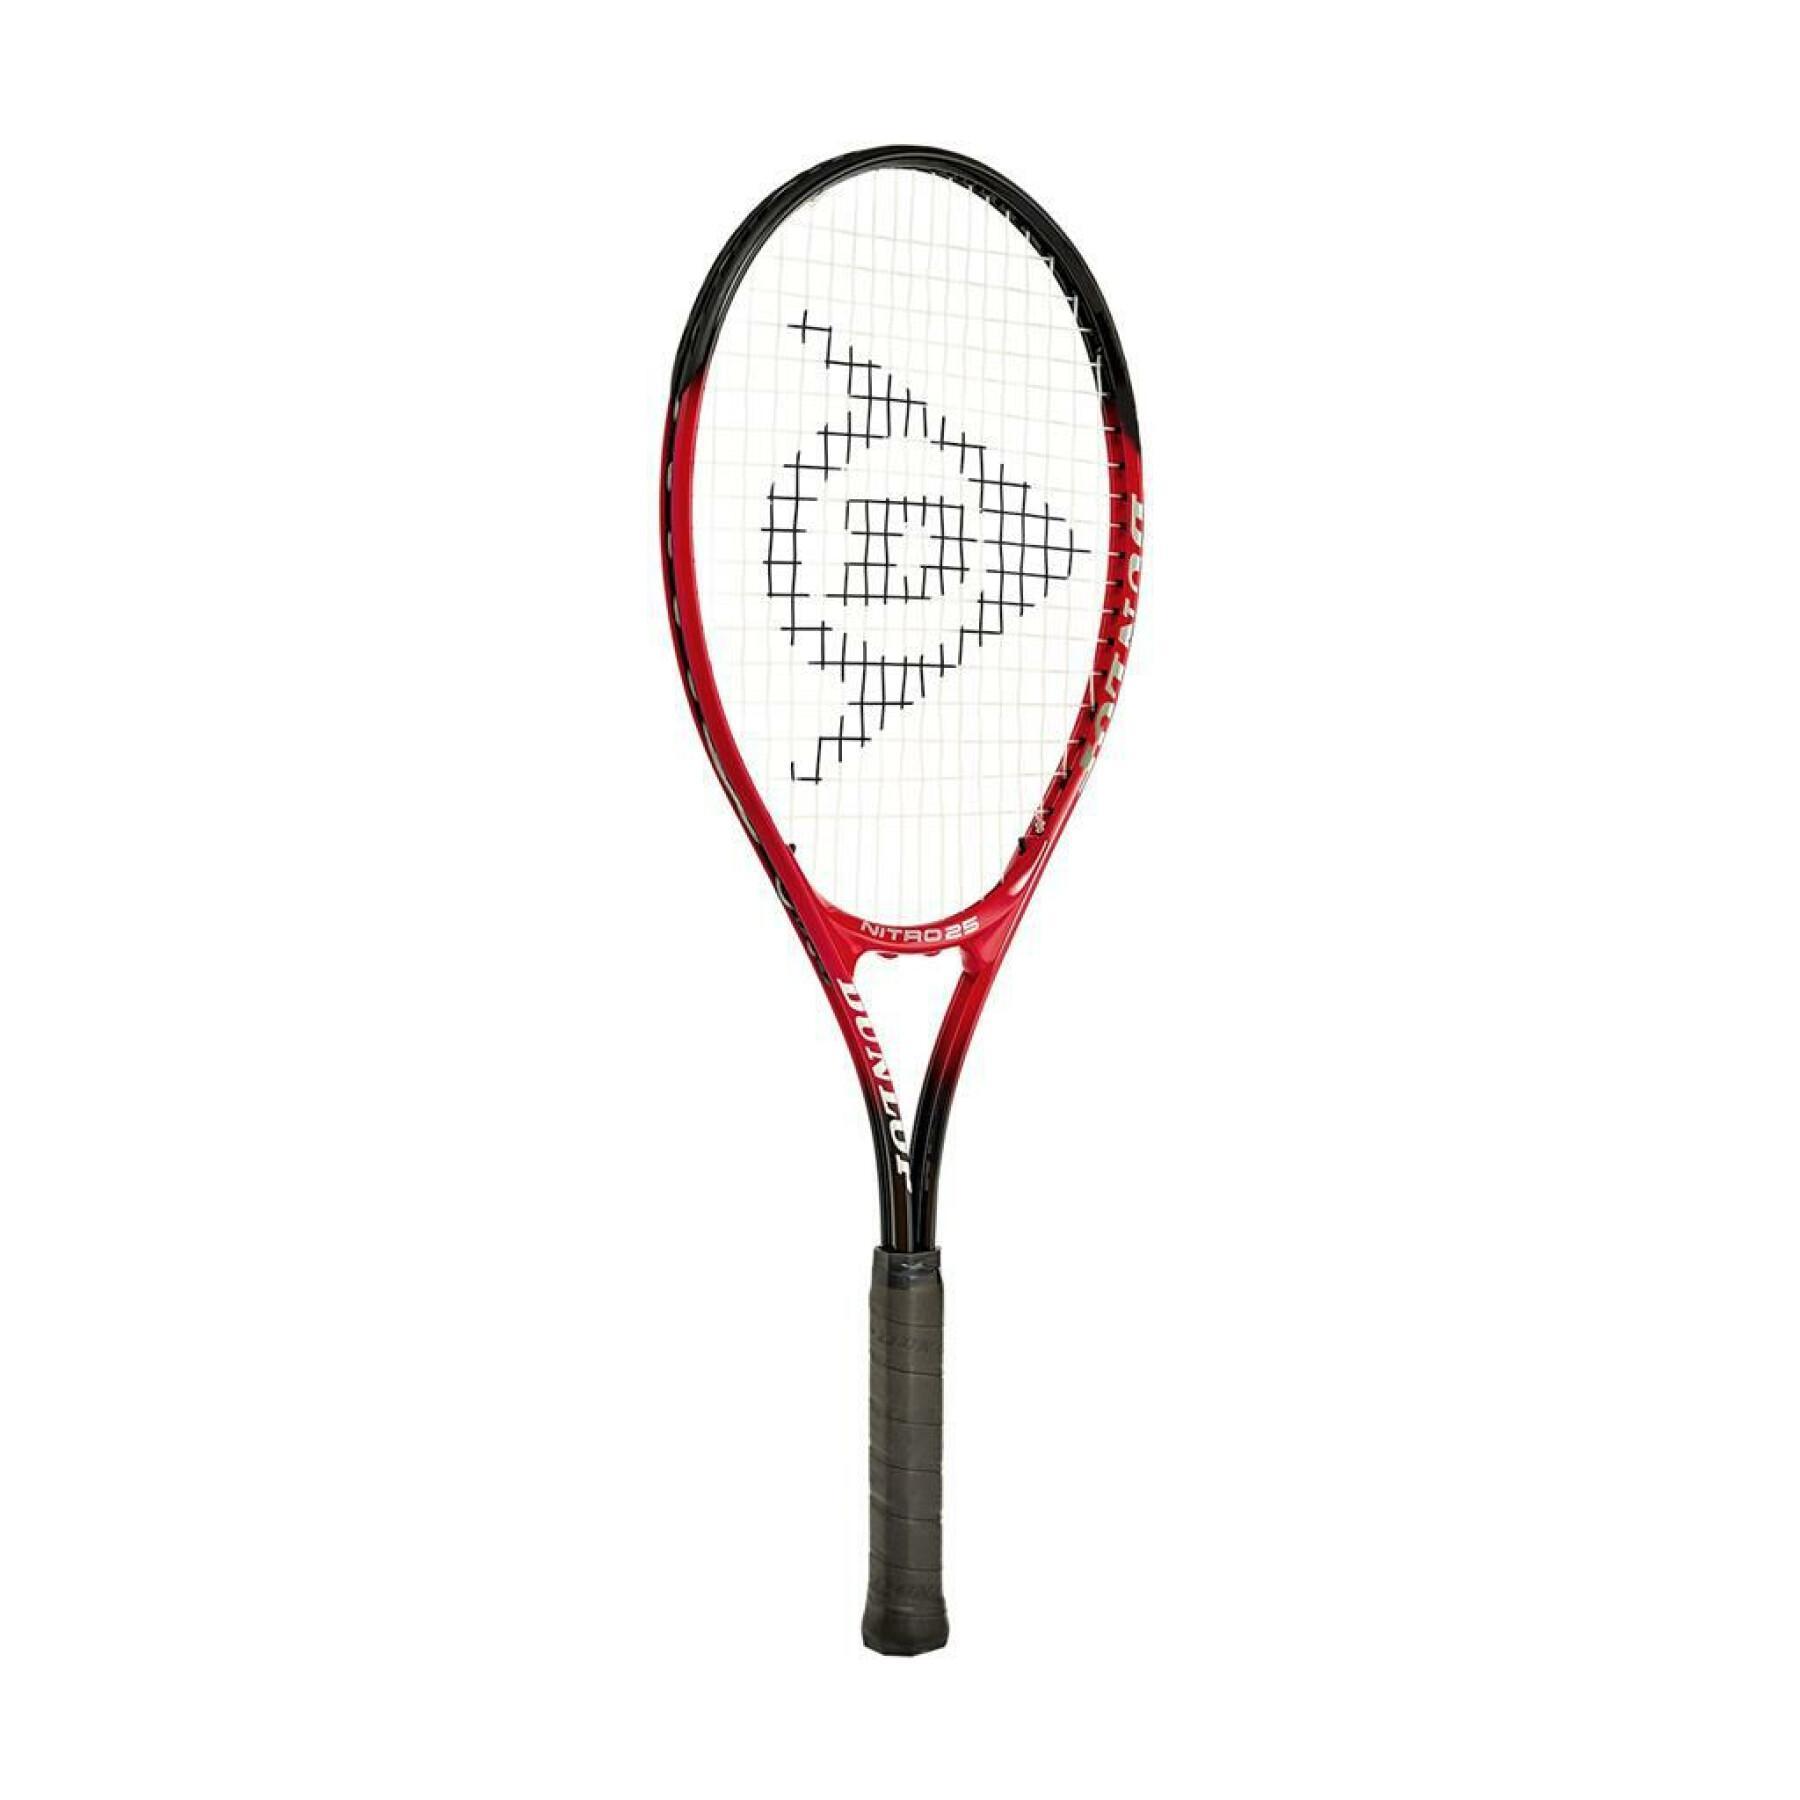 Children's racket Dunlop nitro 25 g0